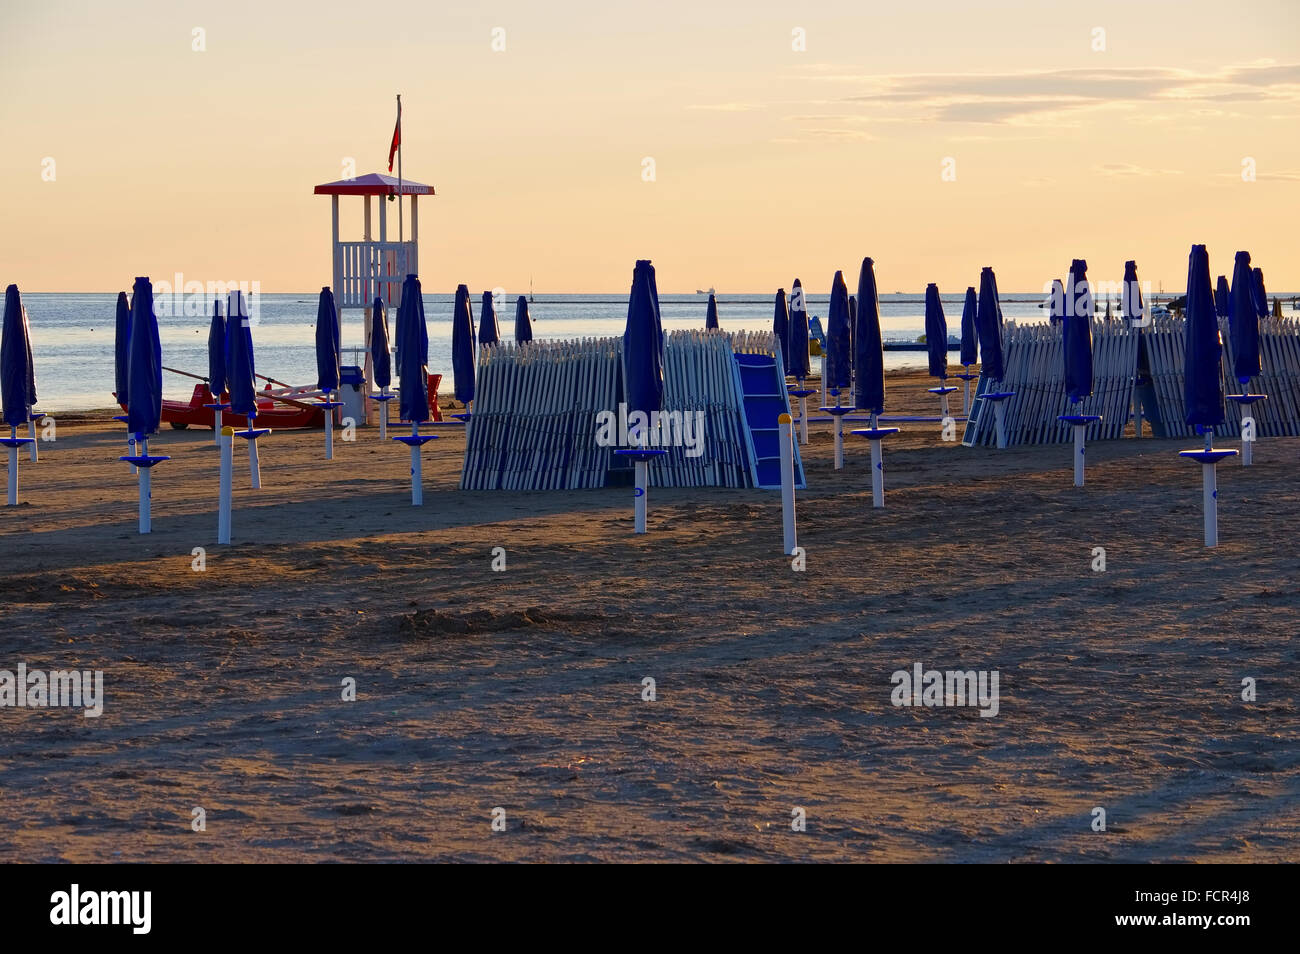 Grado in Italien Strand Sonnenuntergang - Grado in Italia, spiaggia tramonto Foto Stock